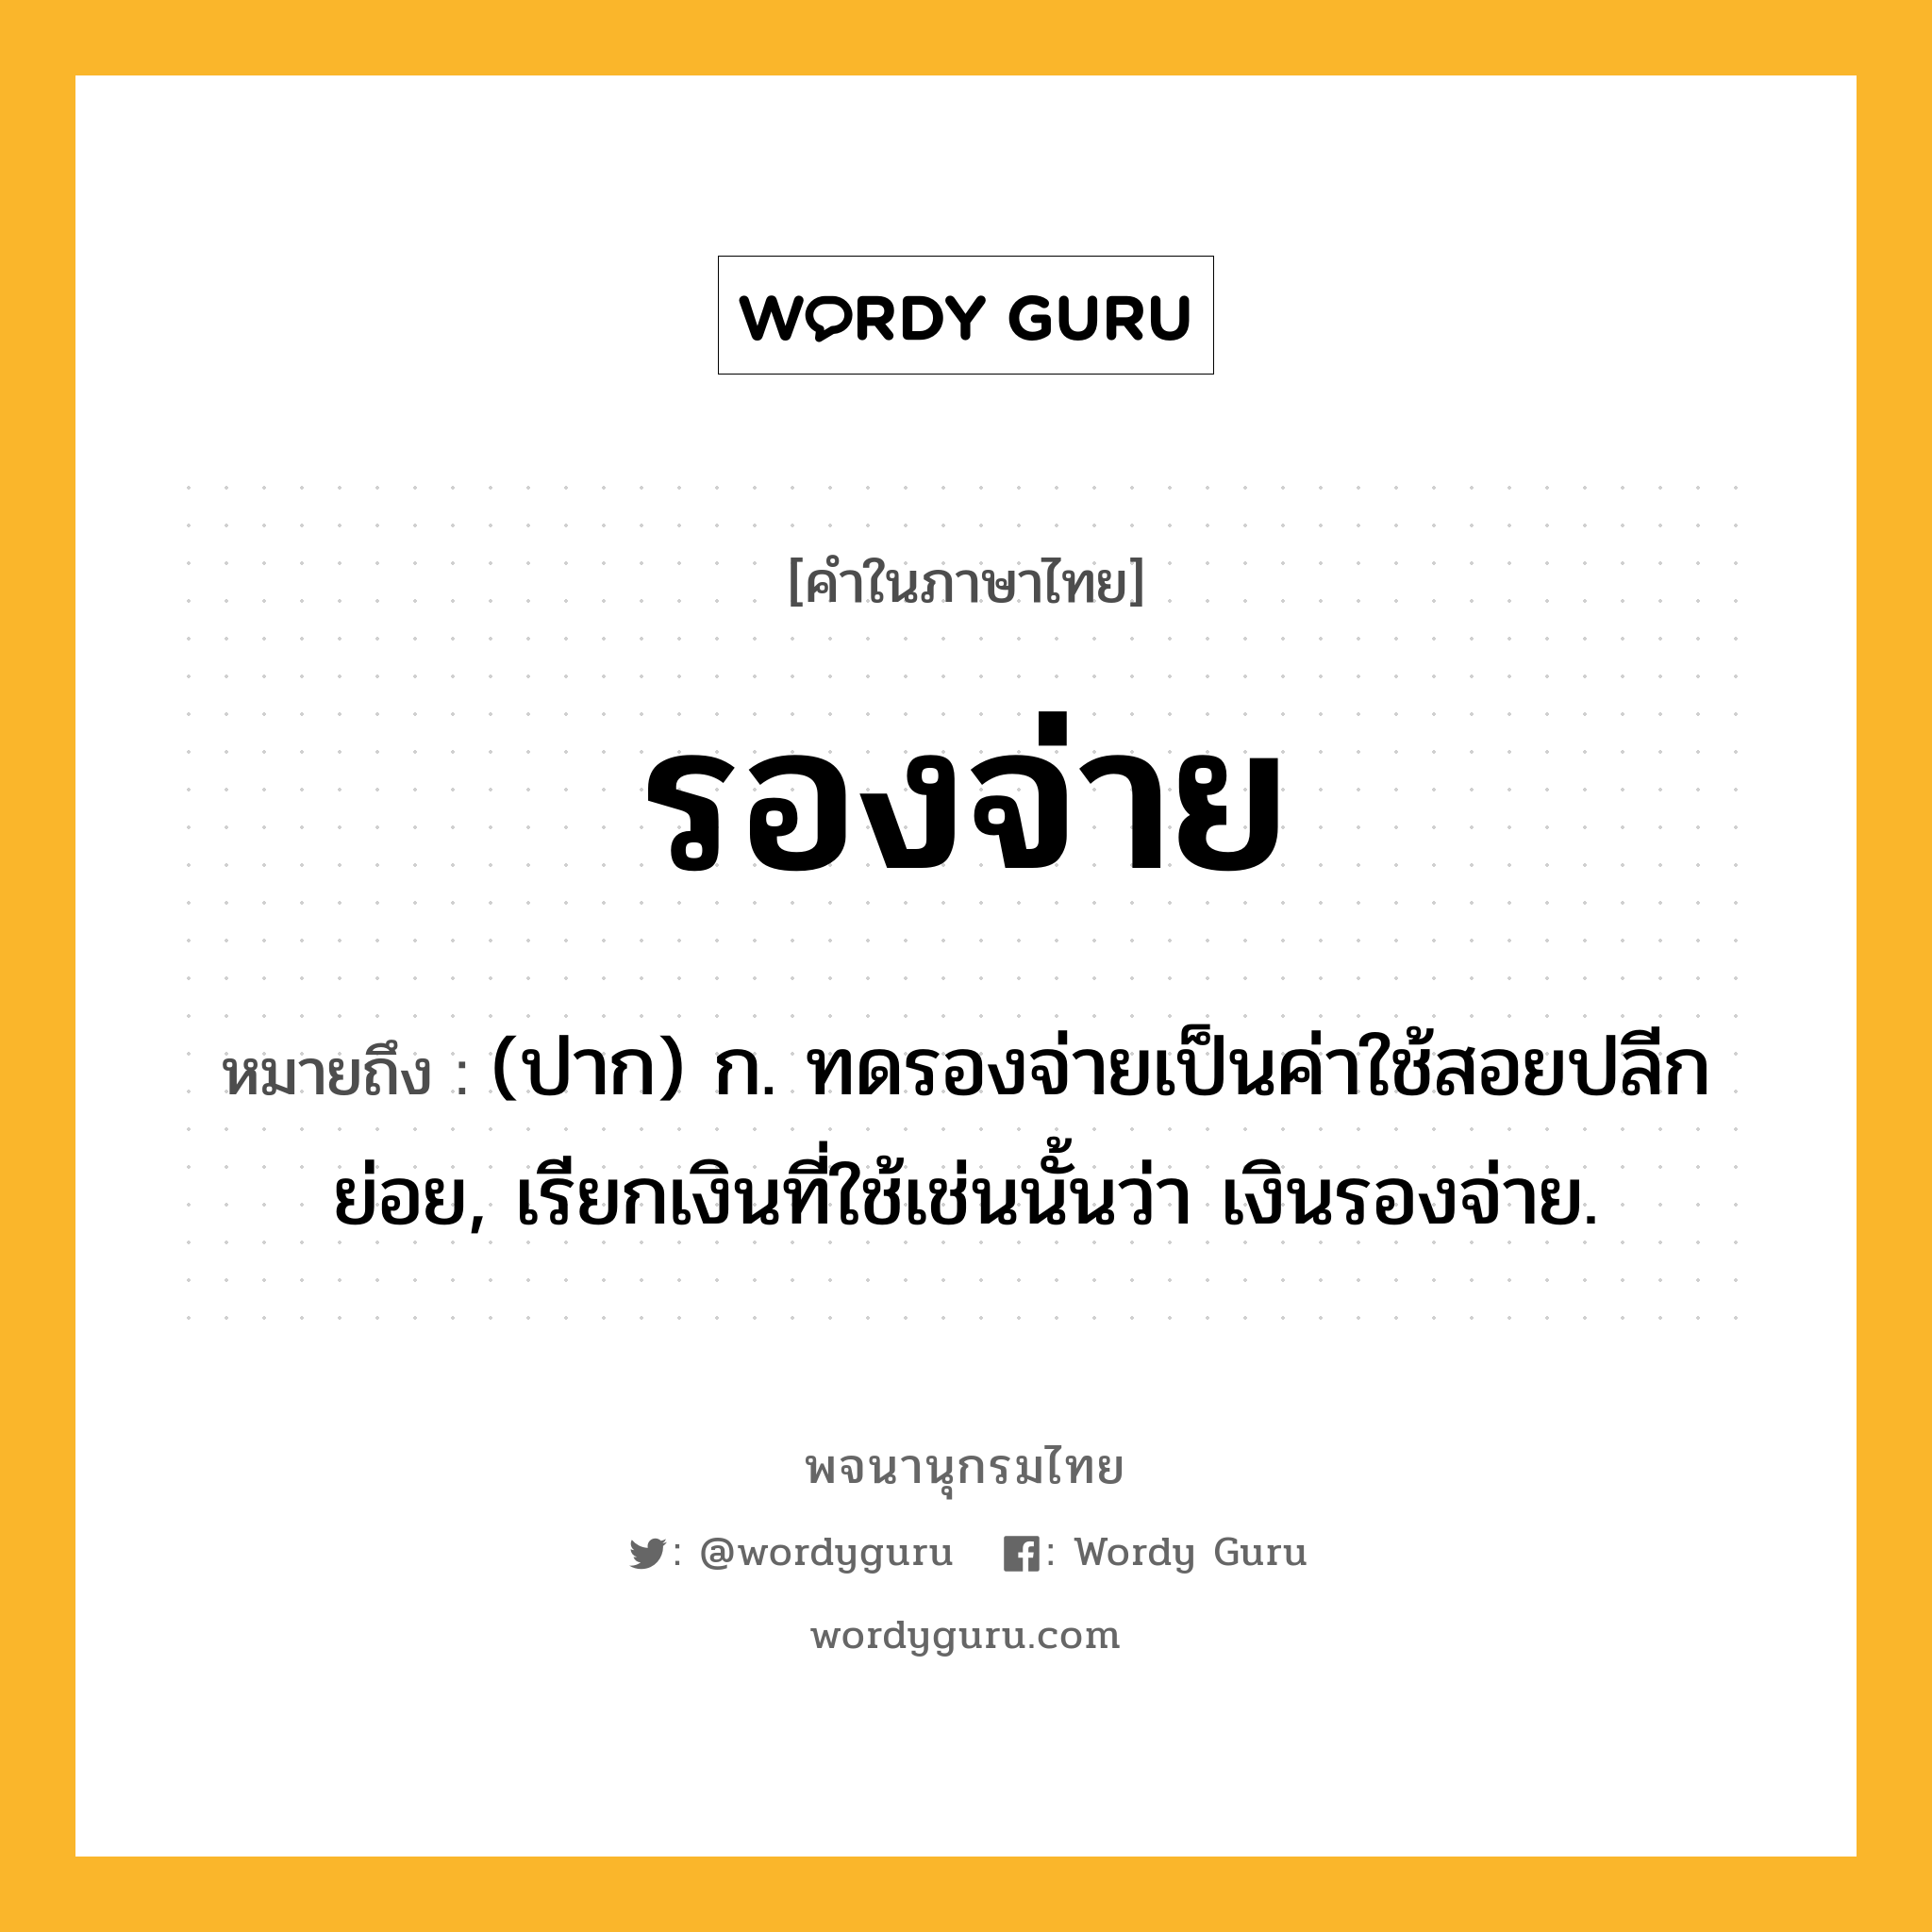 รองจ่าย ความหมาย หมายถึงอะไร?, คำในภาษาไทย รองจ่าย หมายถึง (ปาก) ก. ทดรองจ่ายเป็นค่าใช้สอยปลีกย่อย, เรียกเงินที่ใช้เช่นนั้นว่า เงินรองจ่าย.